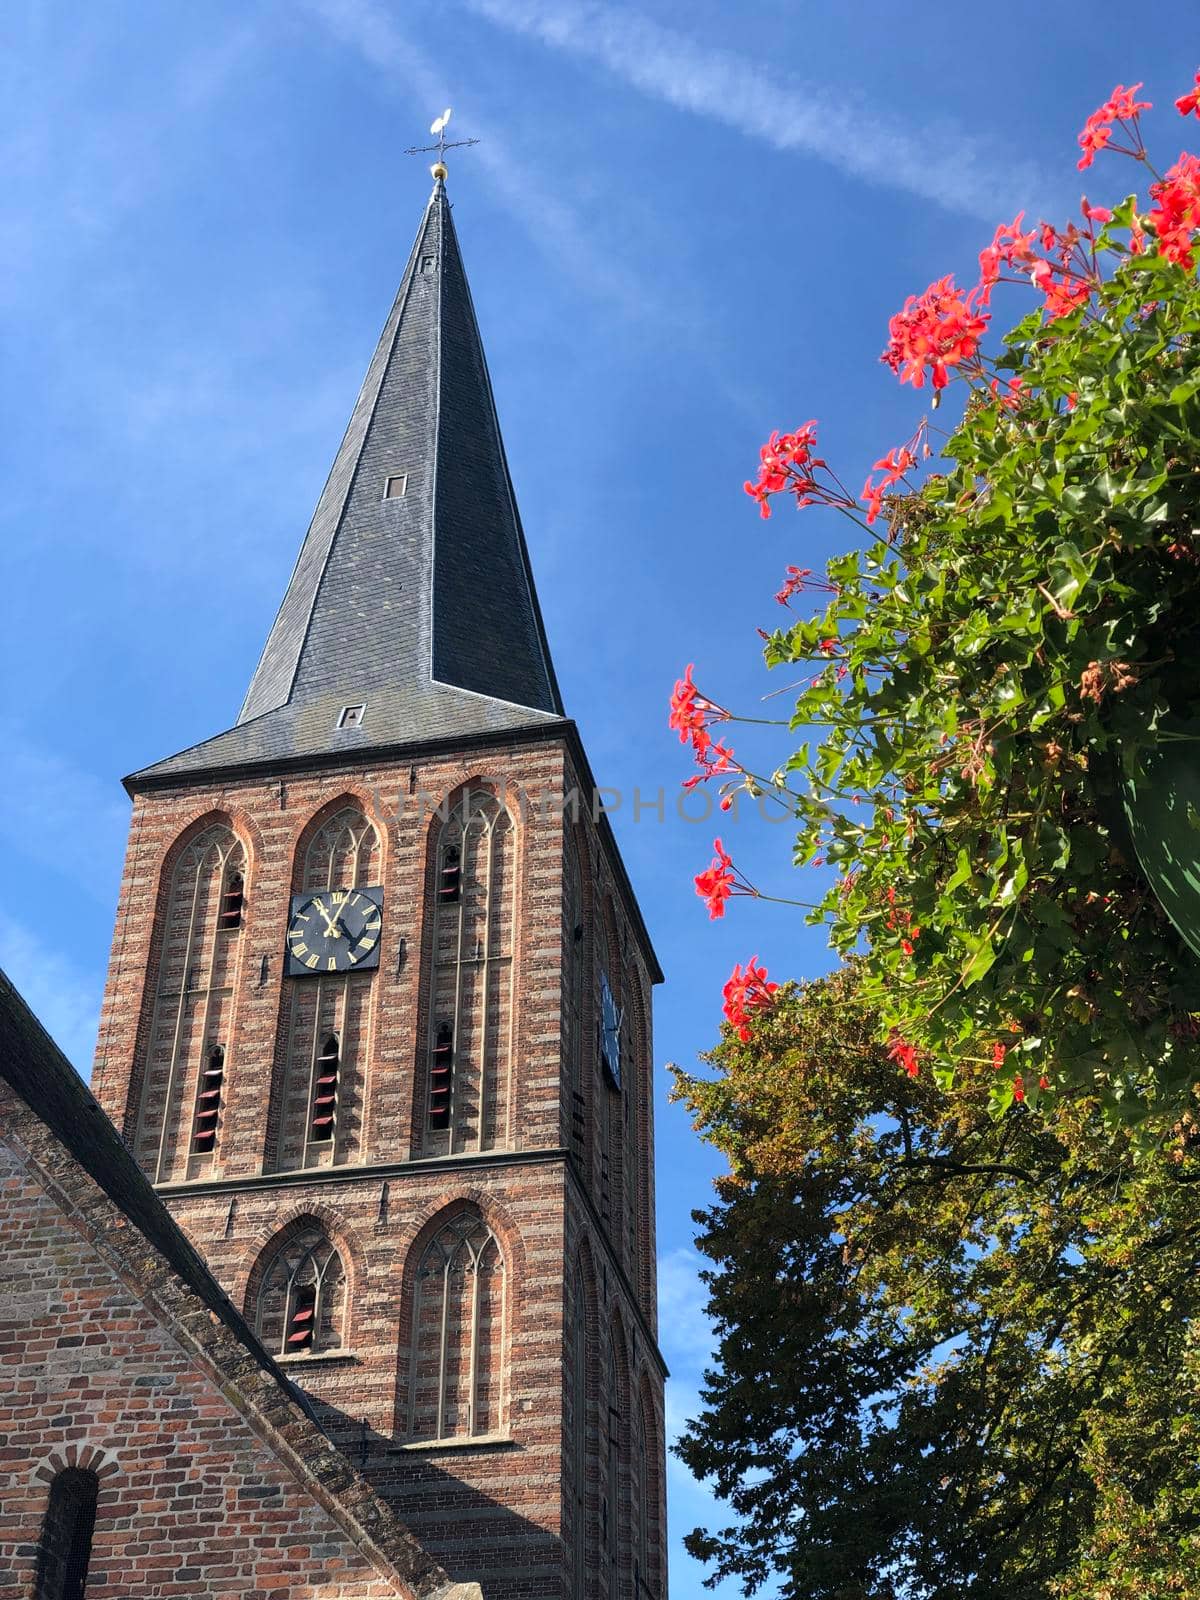 Remigius church in Hengelo Gelderland by traveltelly